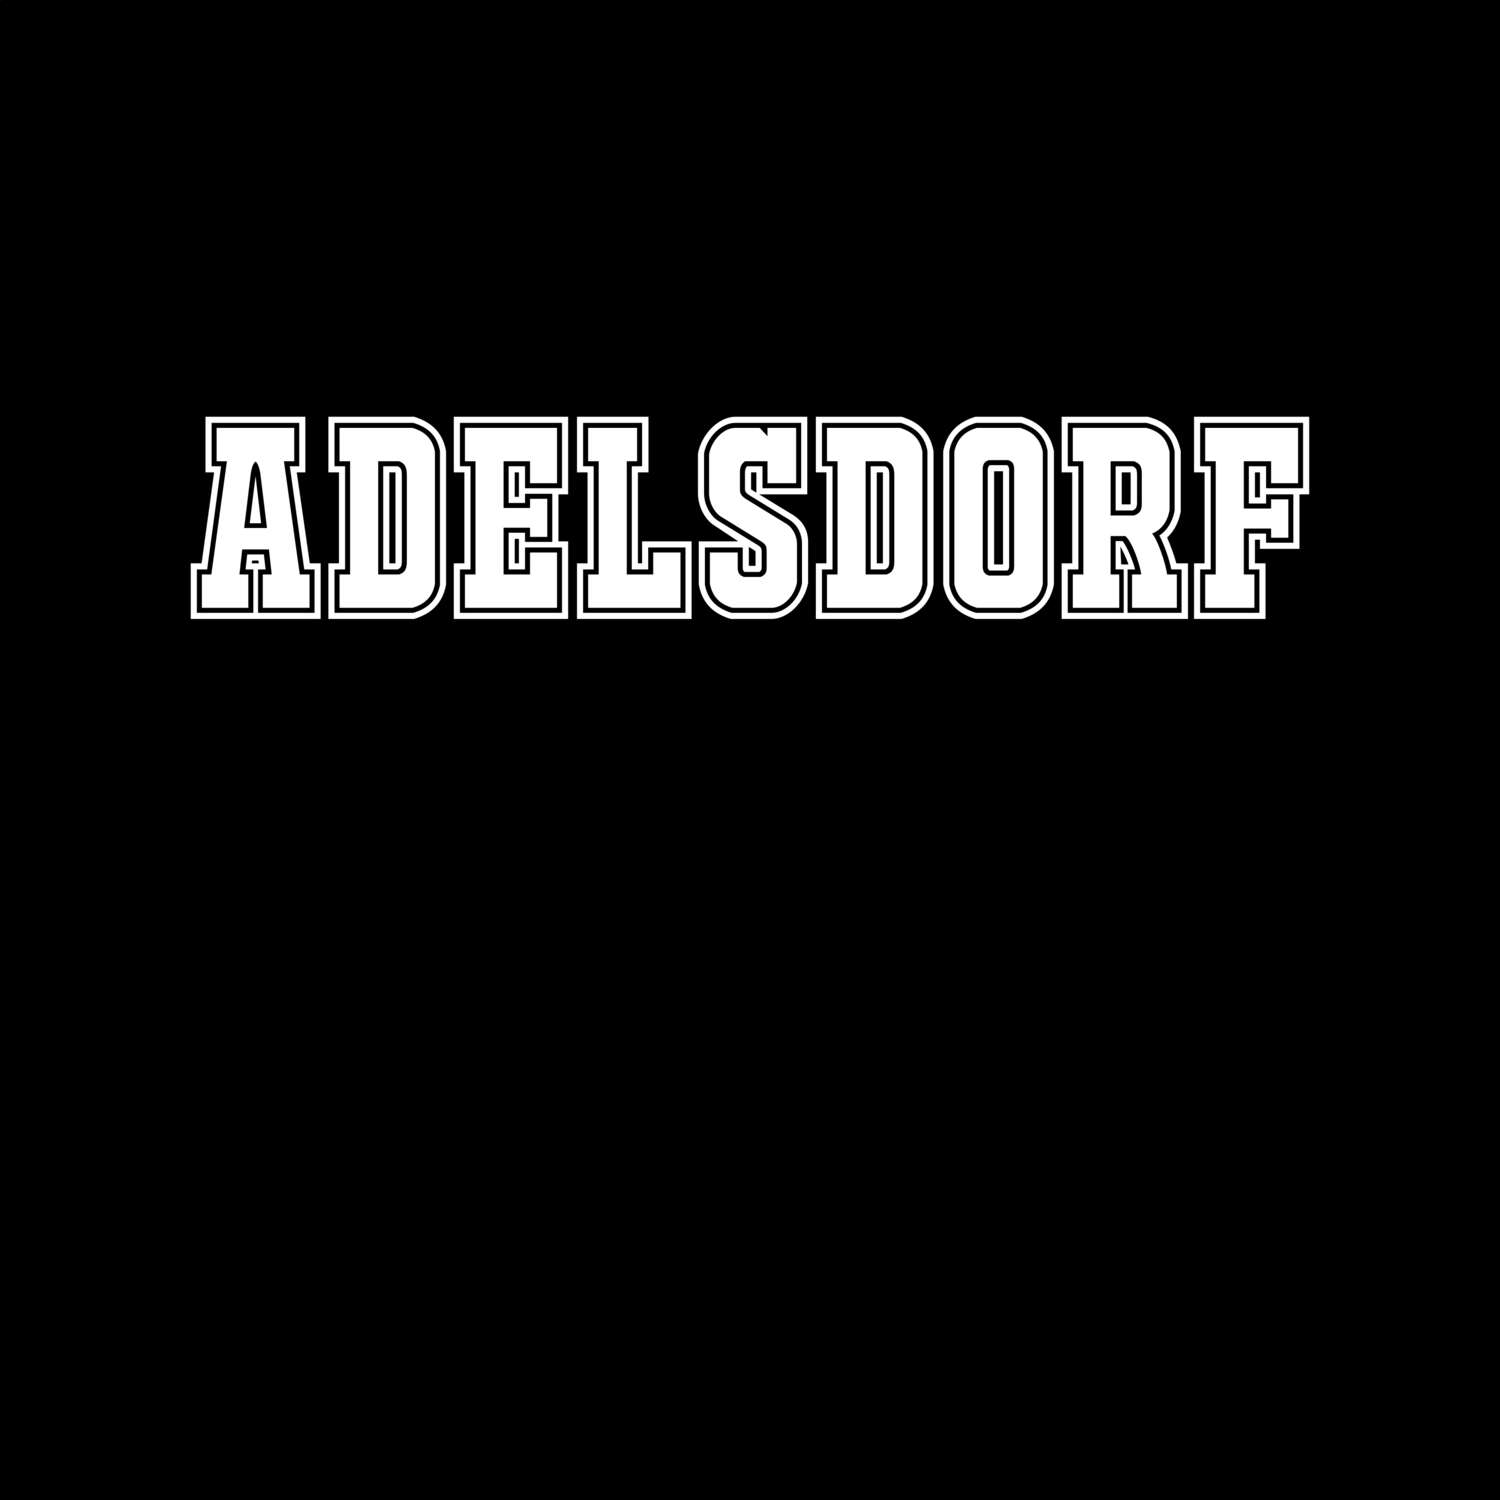 Adelsdorf T-Shirt »Classic«